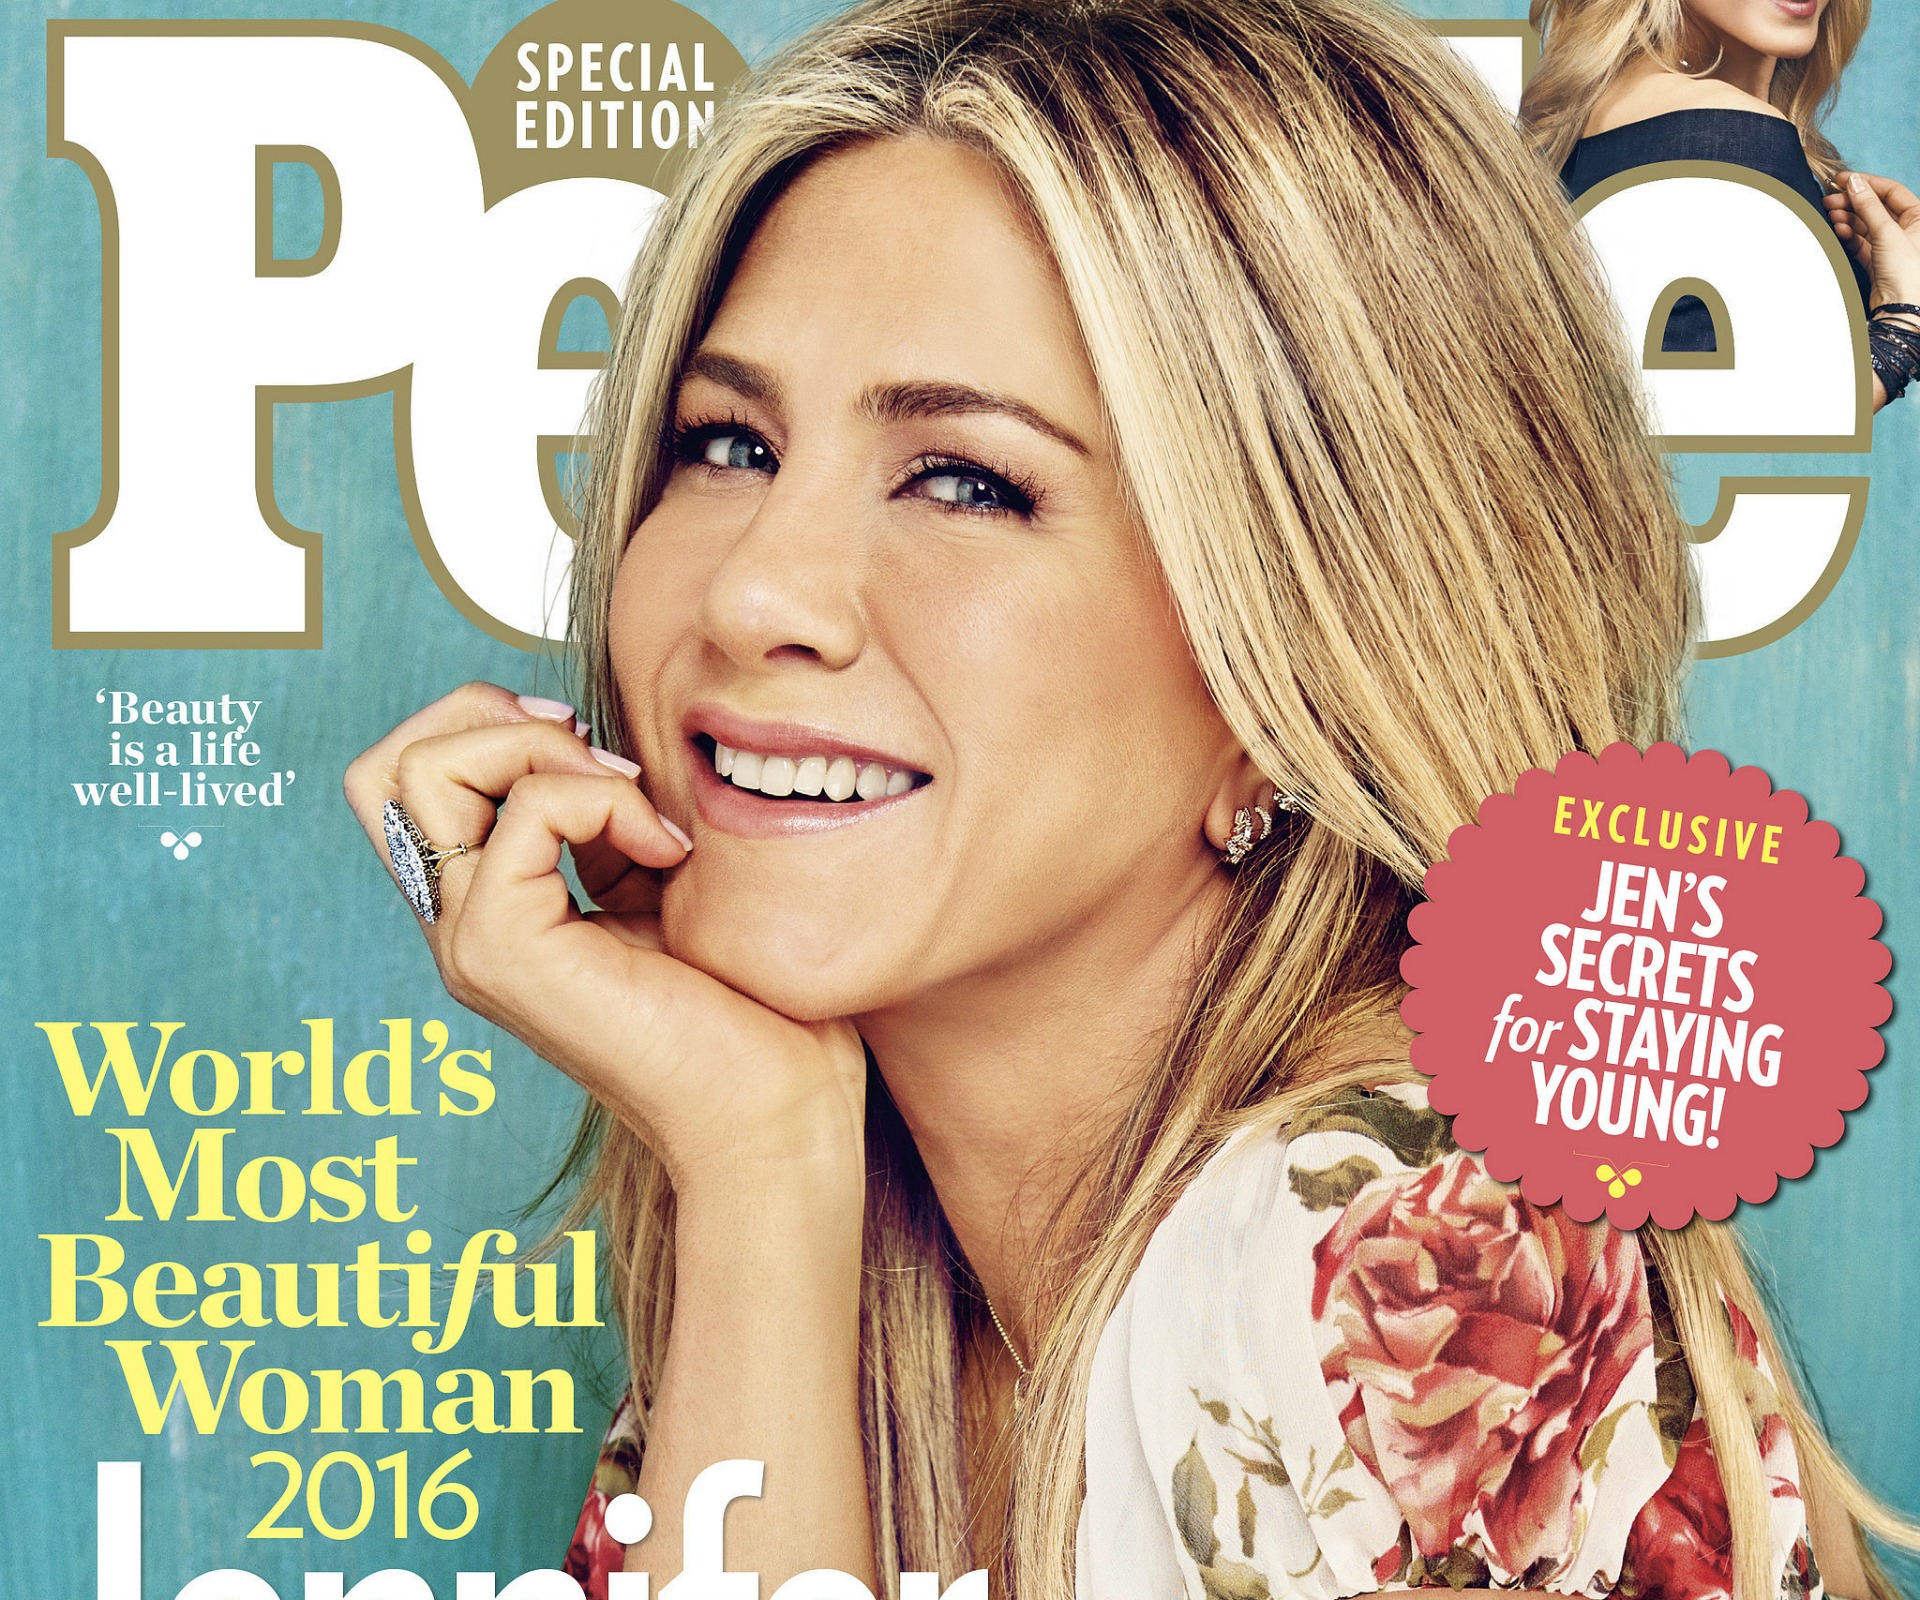 Jennifer Aniston named World’s Most Beautiful Woman